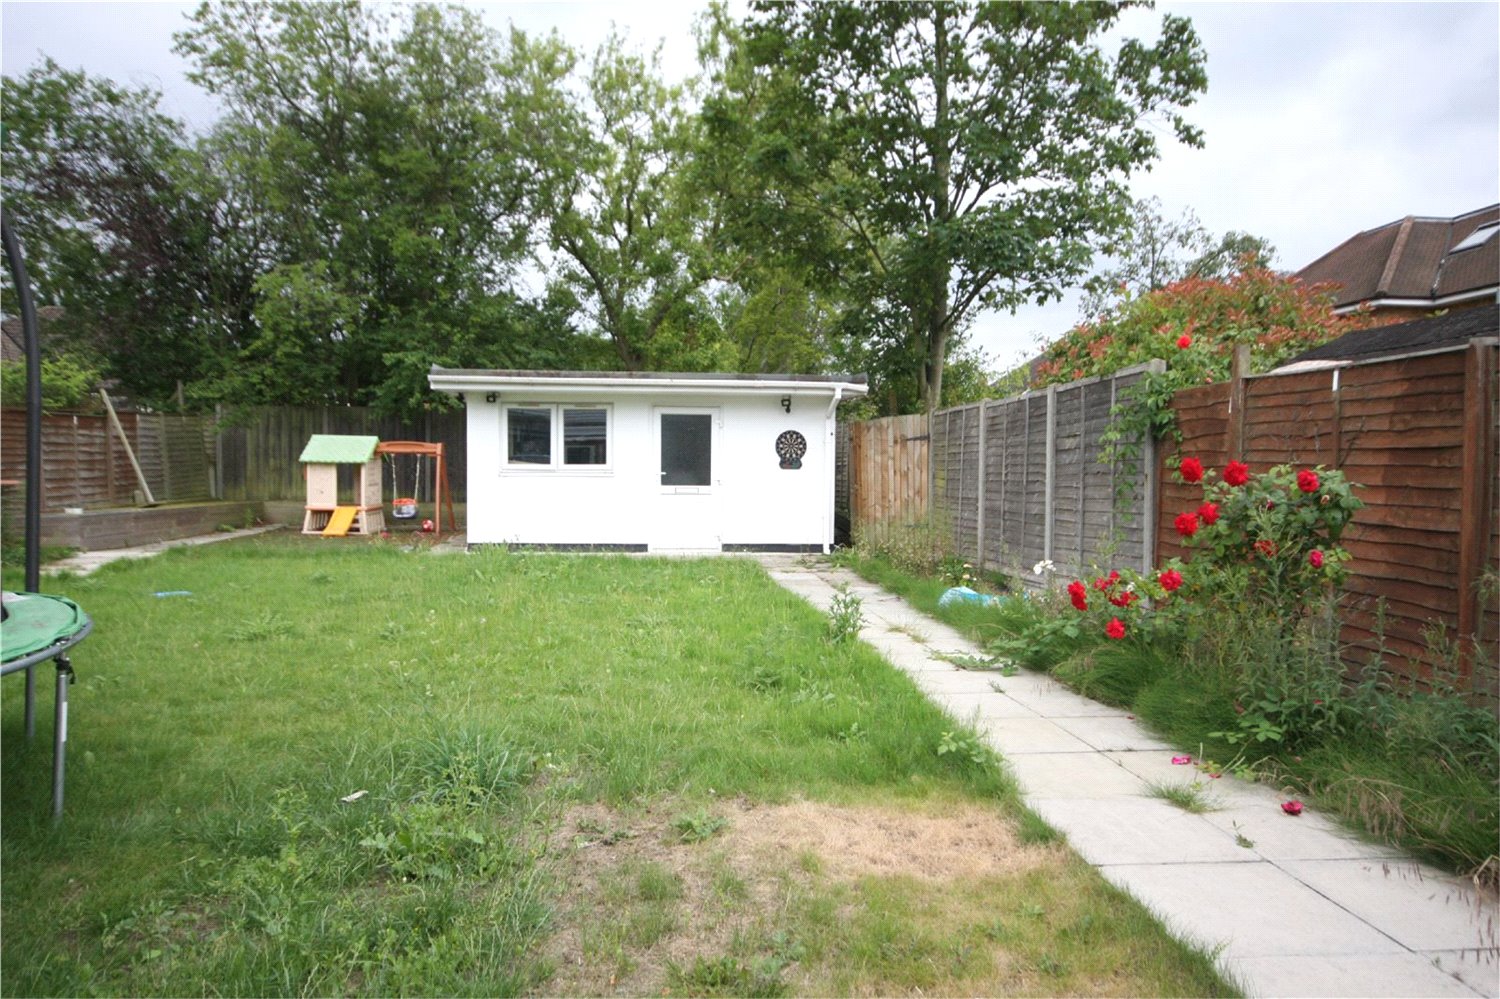 5 Bedrooms Detached bungalow to rent in Beechcroft Gardens, Wembley HA9